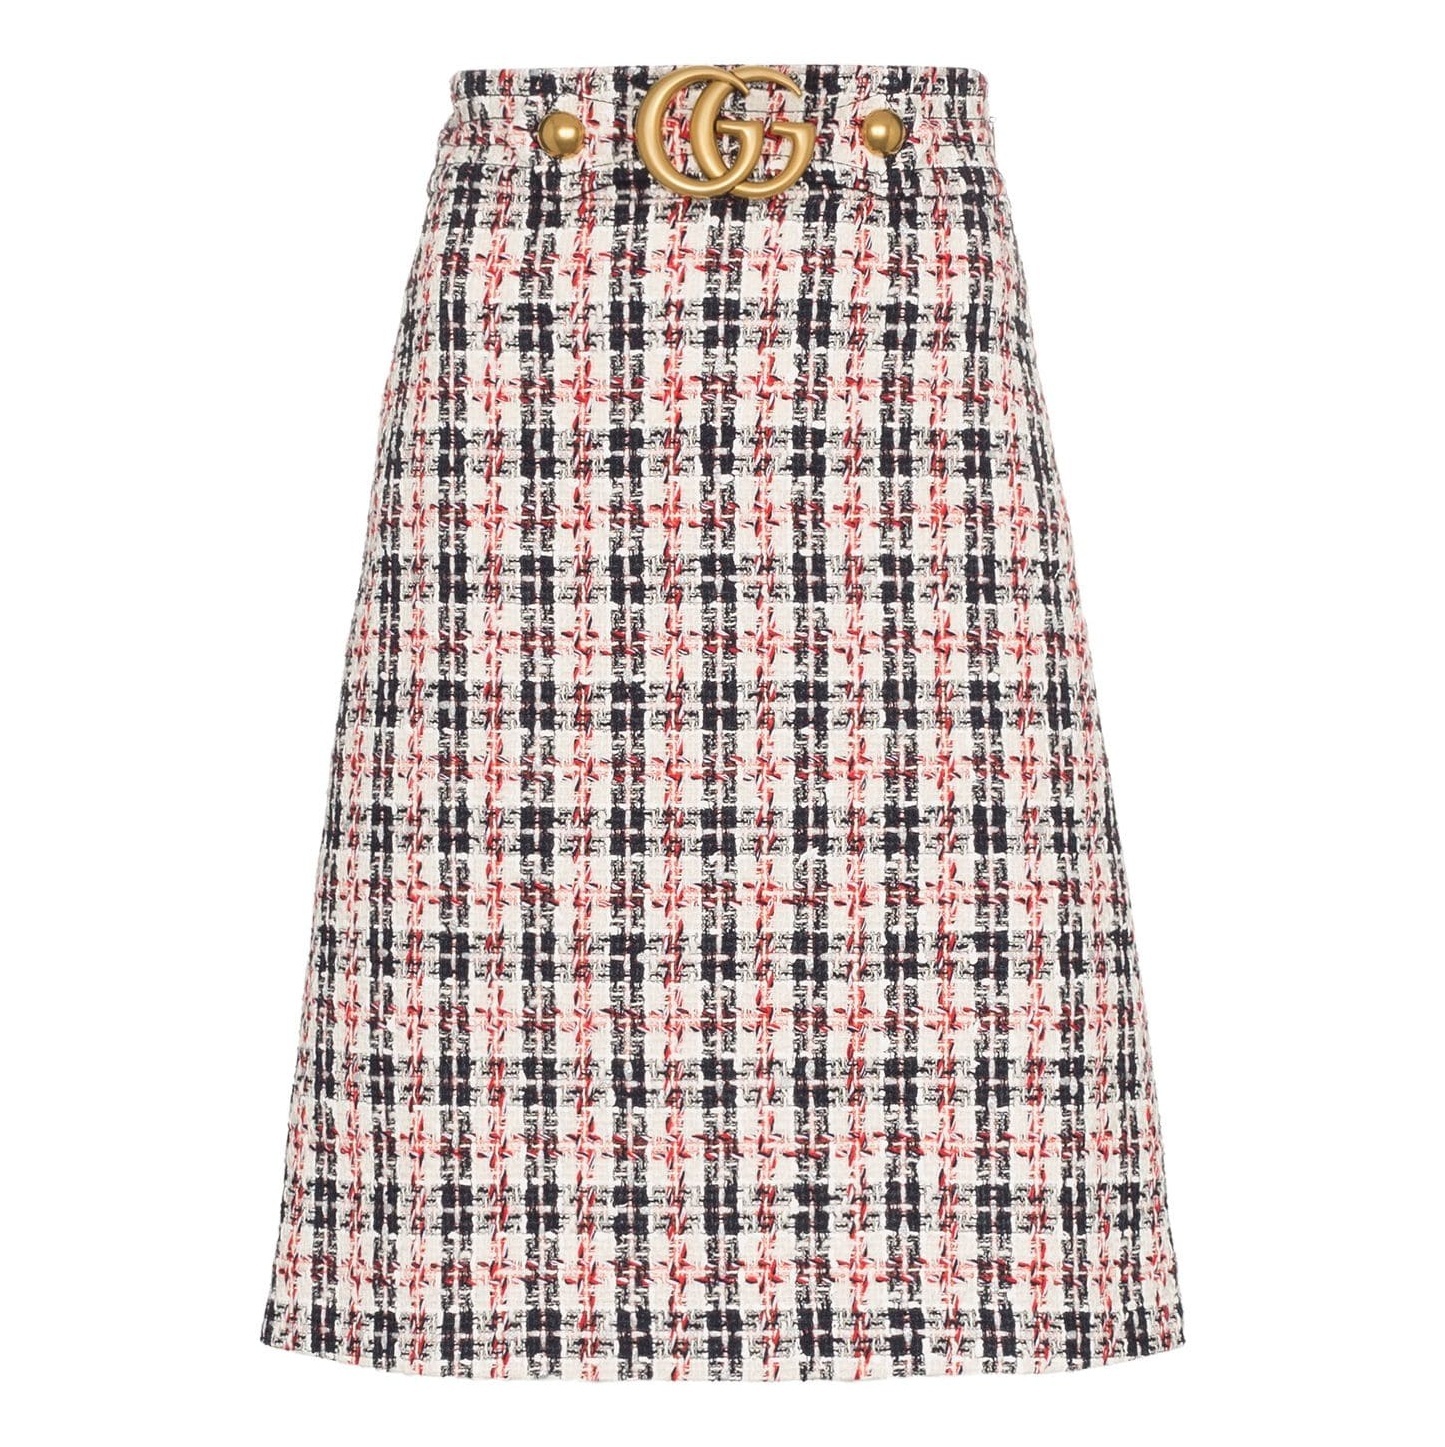 Indie Designs GG belt A-line Tweed Skirt – Indie Designs Clothing